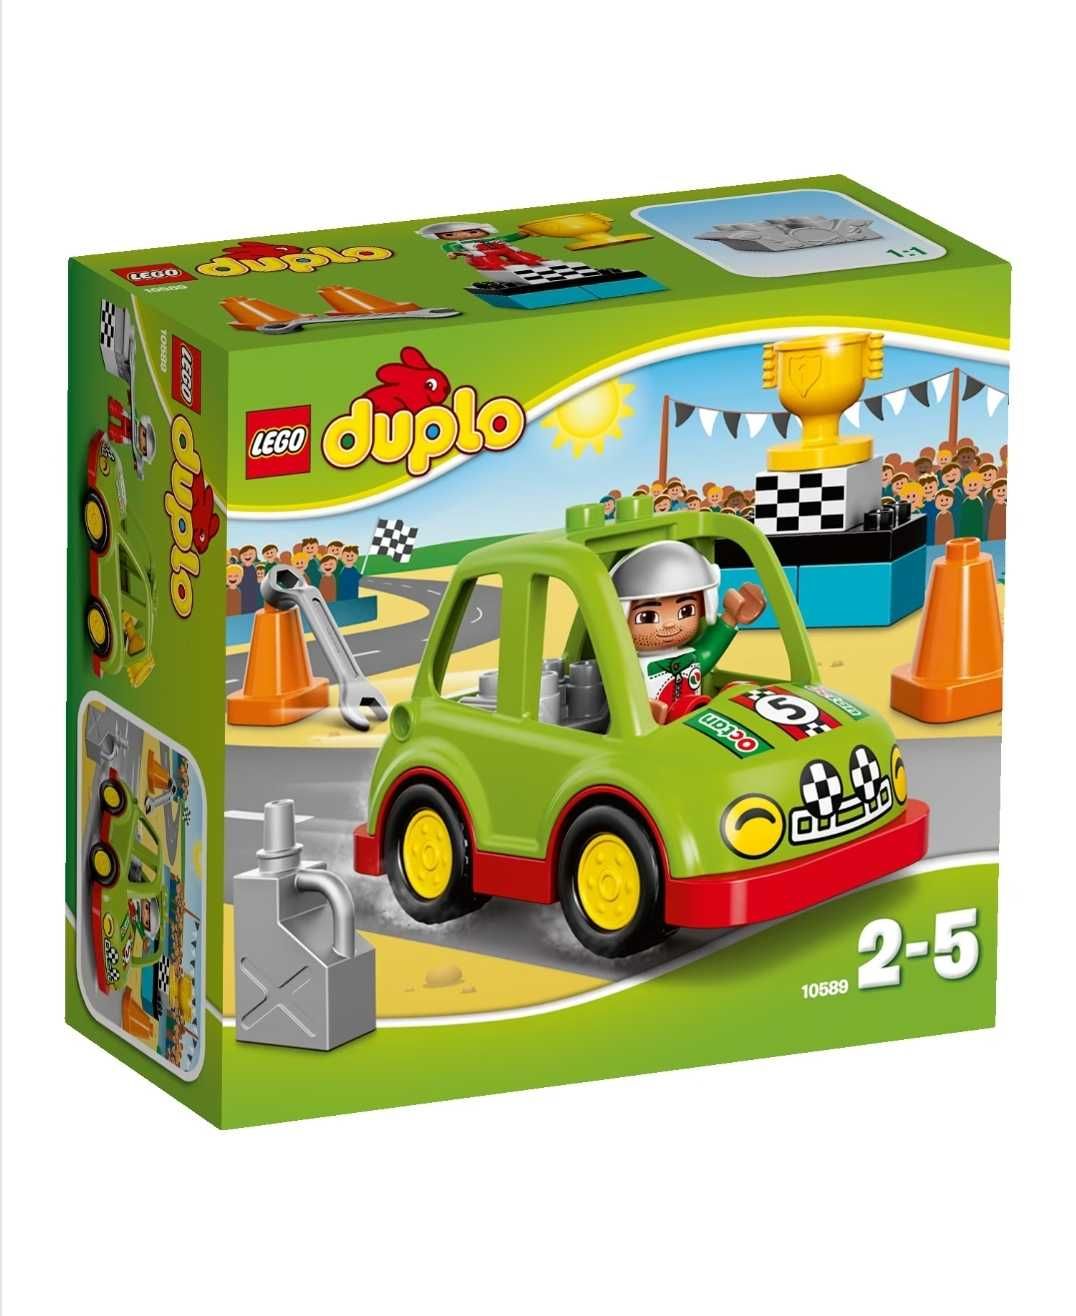 Lego duplo town - masina de raliuri -10589